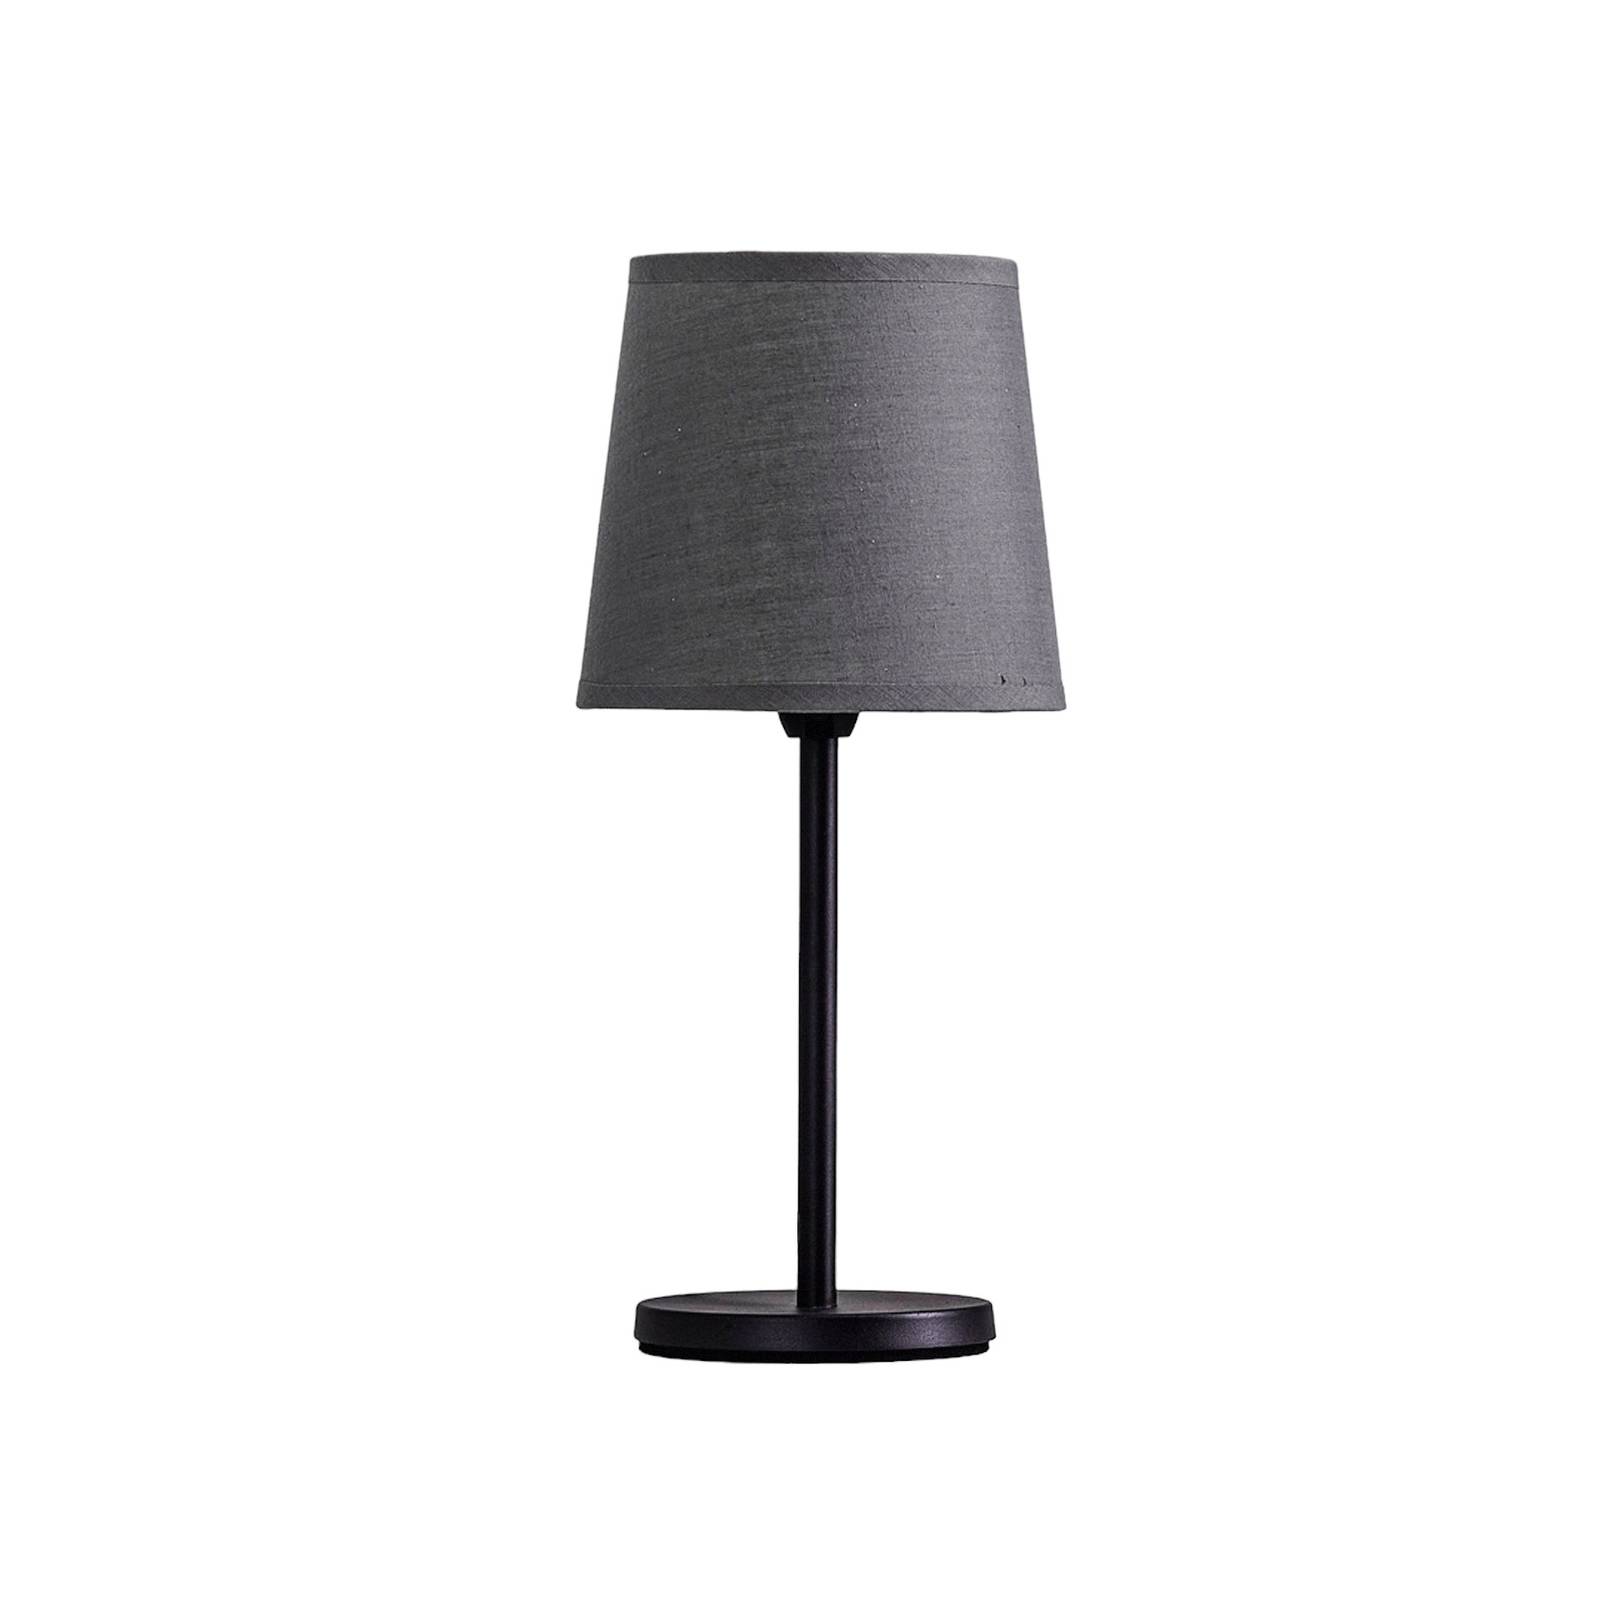 Image of Lampe à poser Eve, abat-jour tissu, noir/gris 4052231501050